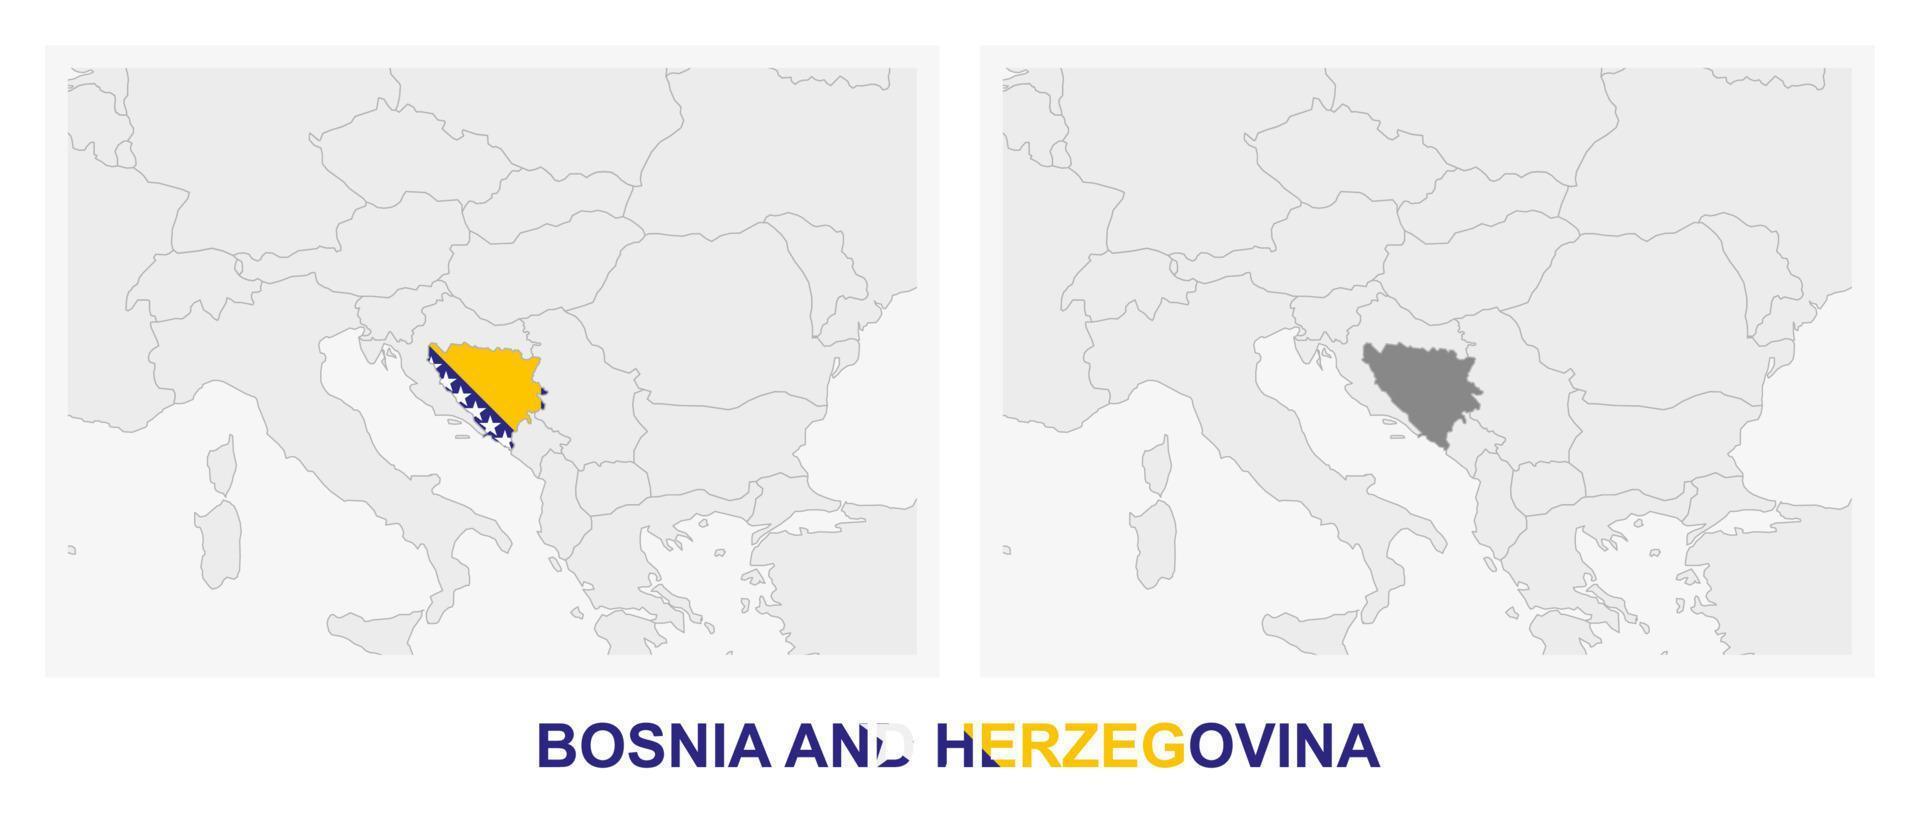 zwei versionen der karte von bosnien und herzegowina, mit der flagge von bosnien und herzegowina und dunkelgrau hervorgehoben. vektor